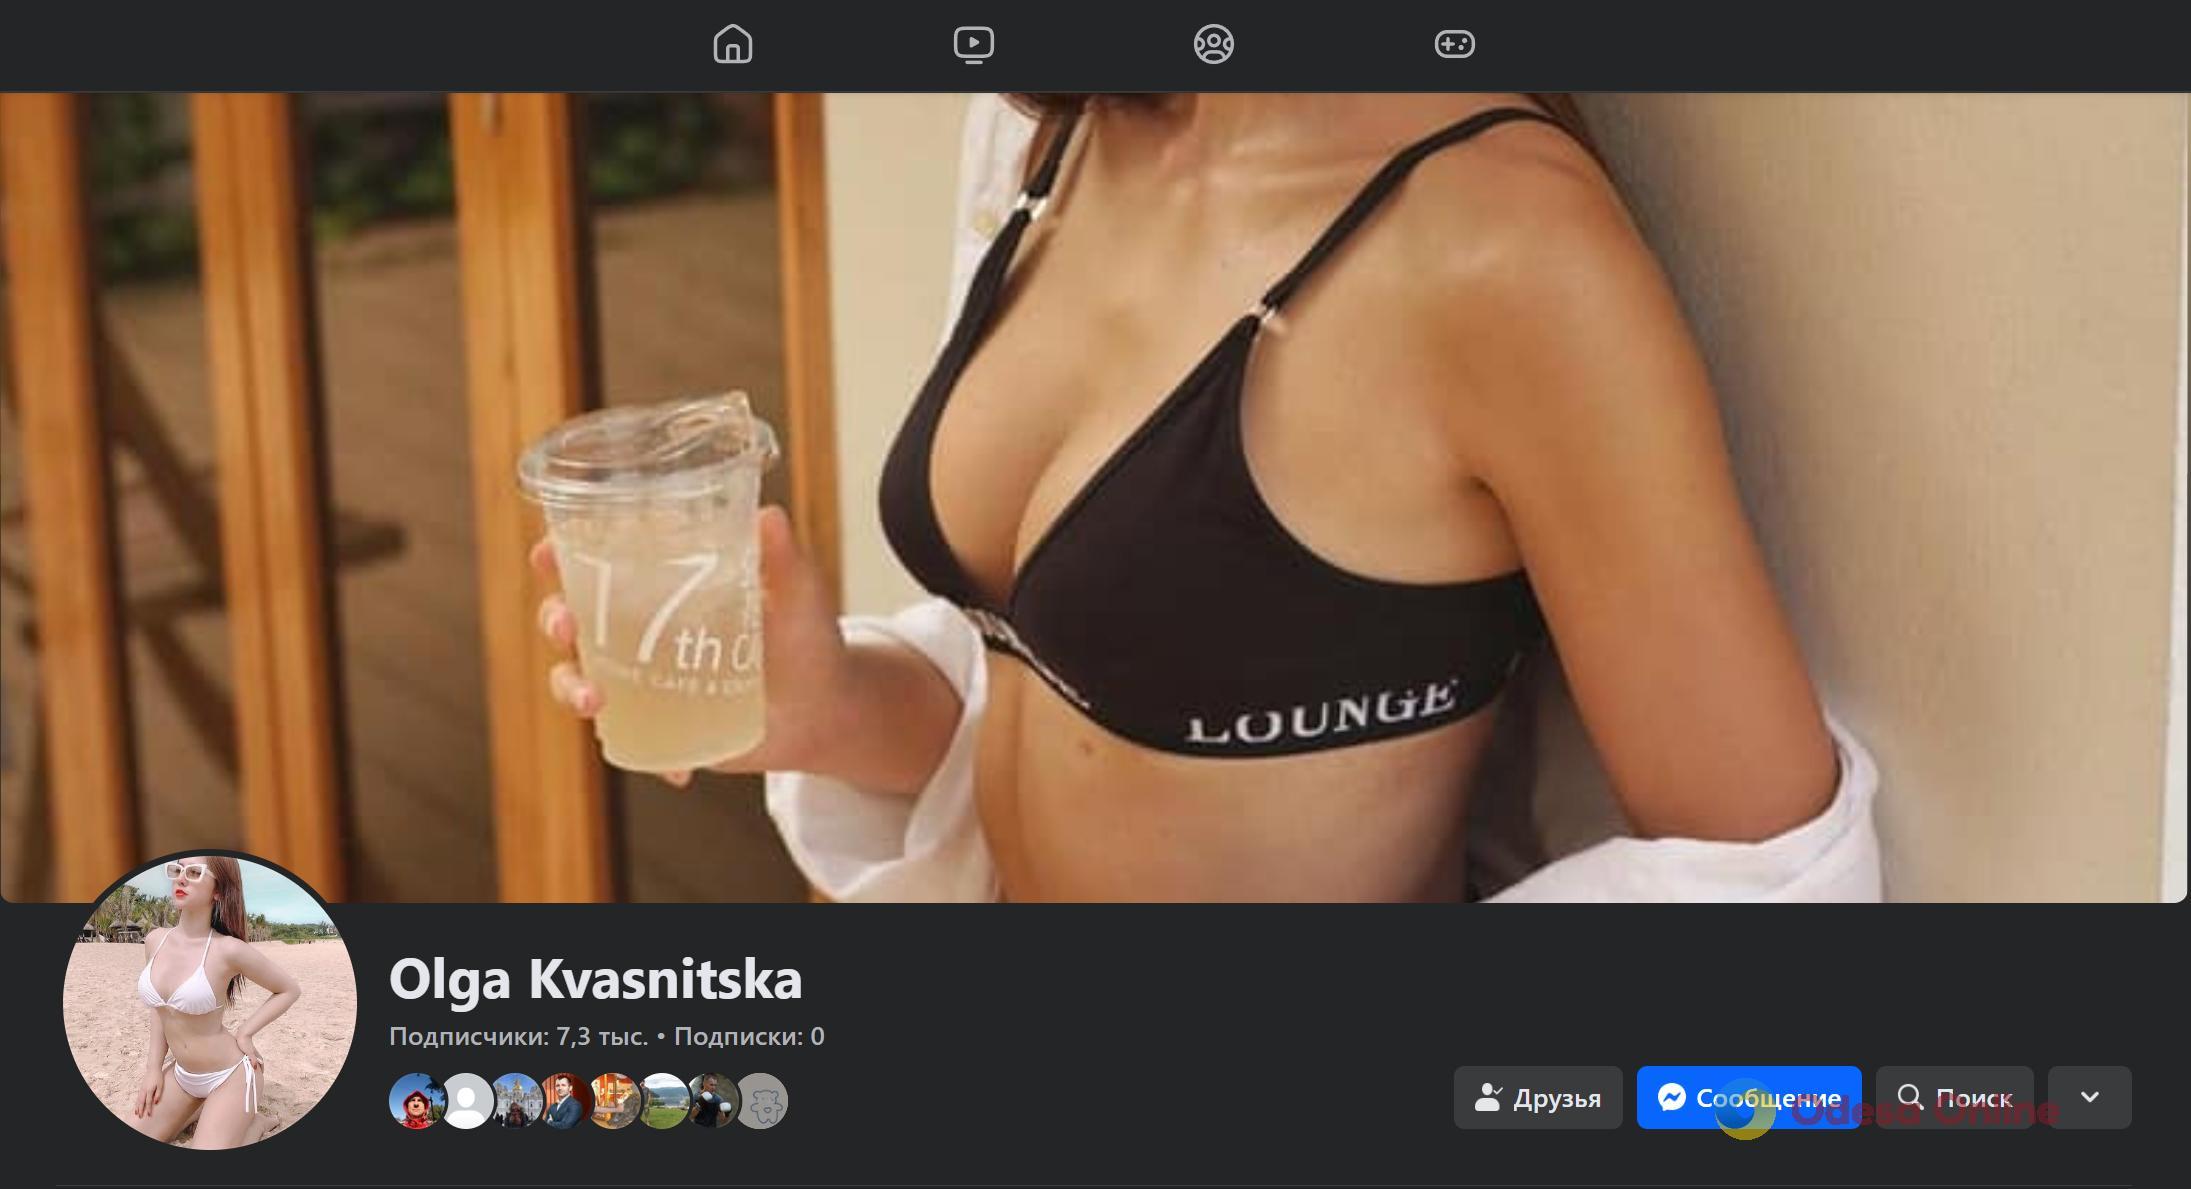 Вымогатели взломали аккаунт депутата Одесского горсовета и разместили там фото полуголых девушек